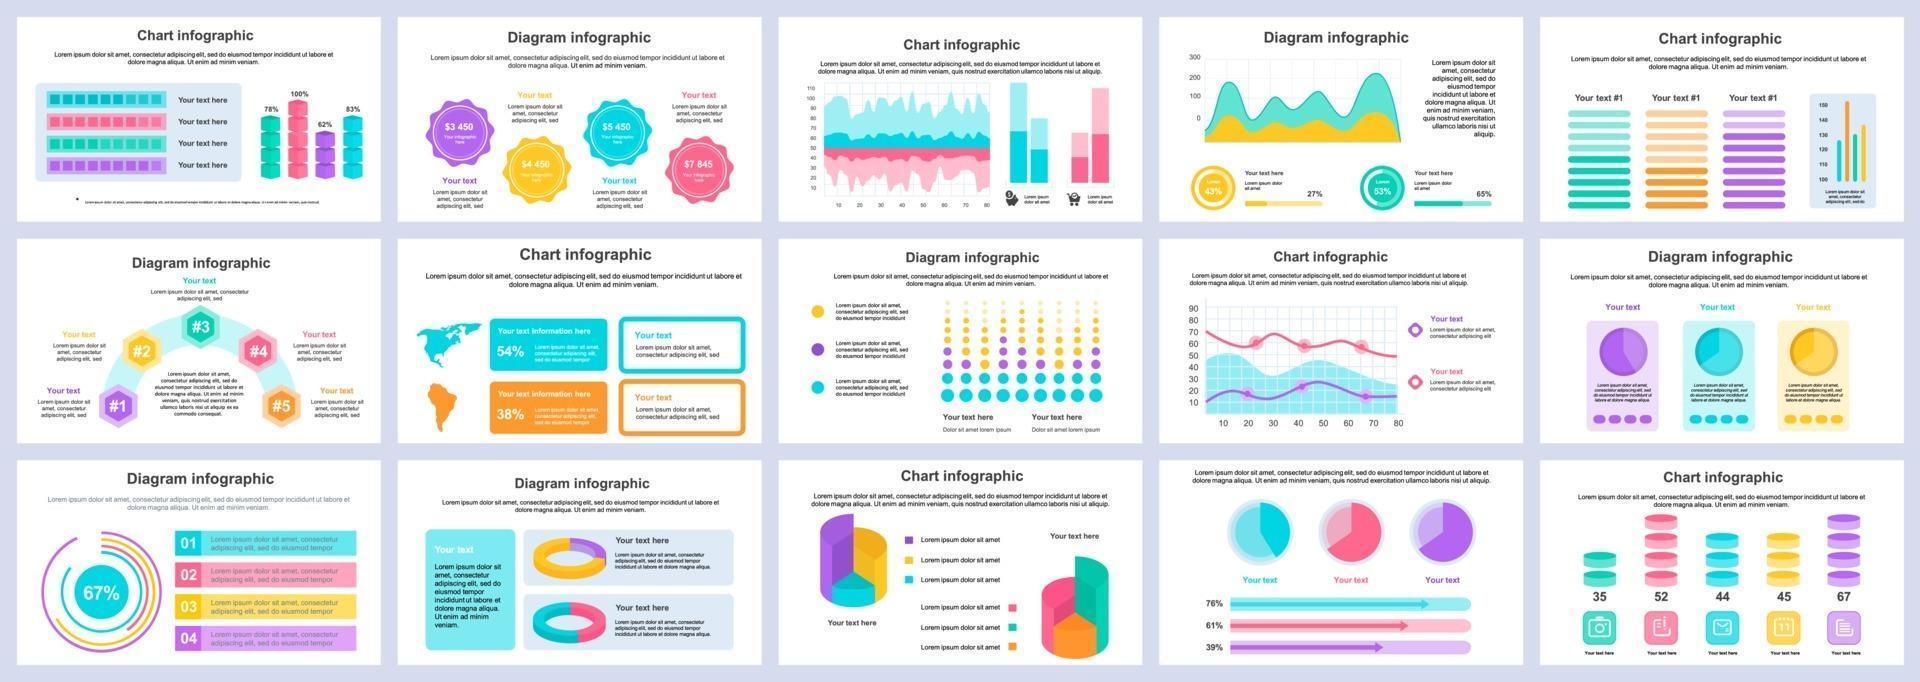 Plantilla de diapositivas de presentación de infografías de negocios y finanzas plantilla de diseño vectorial vector